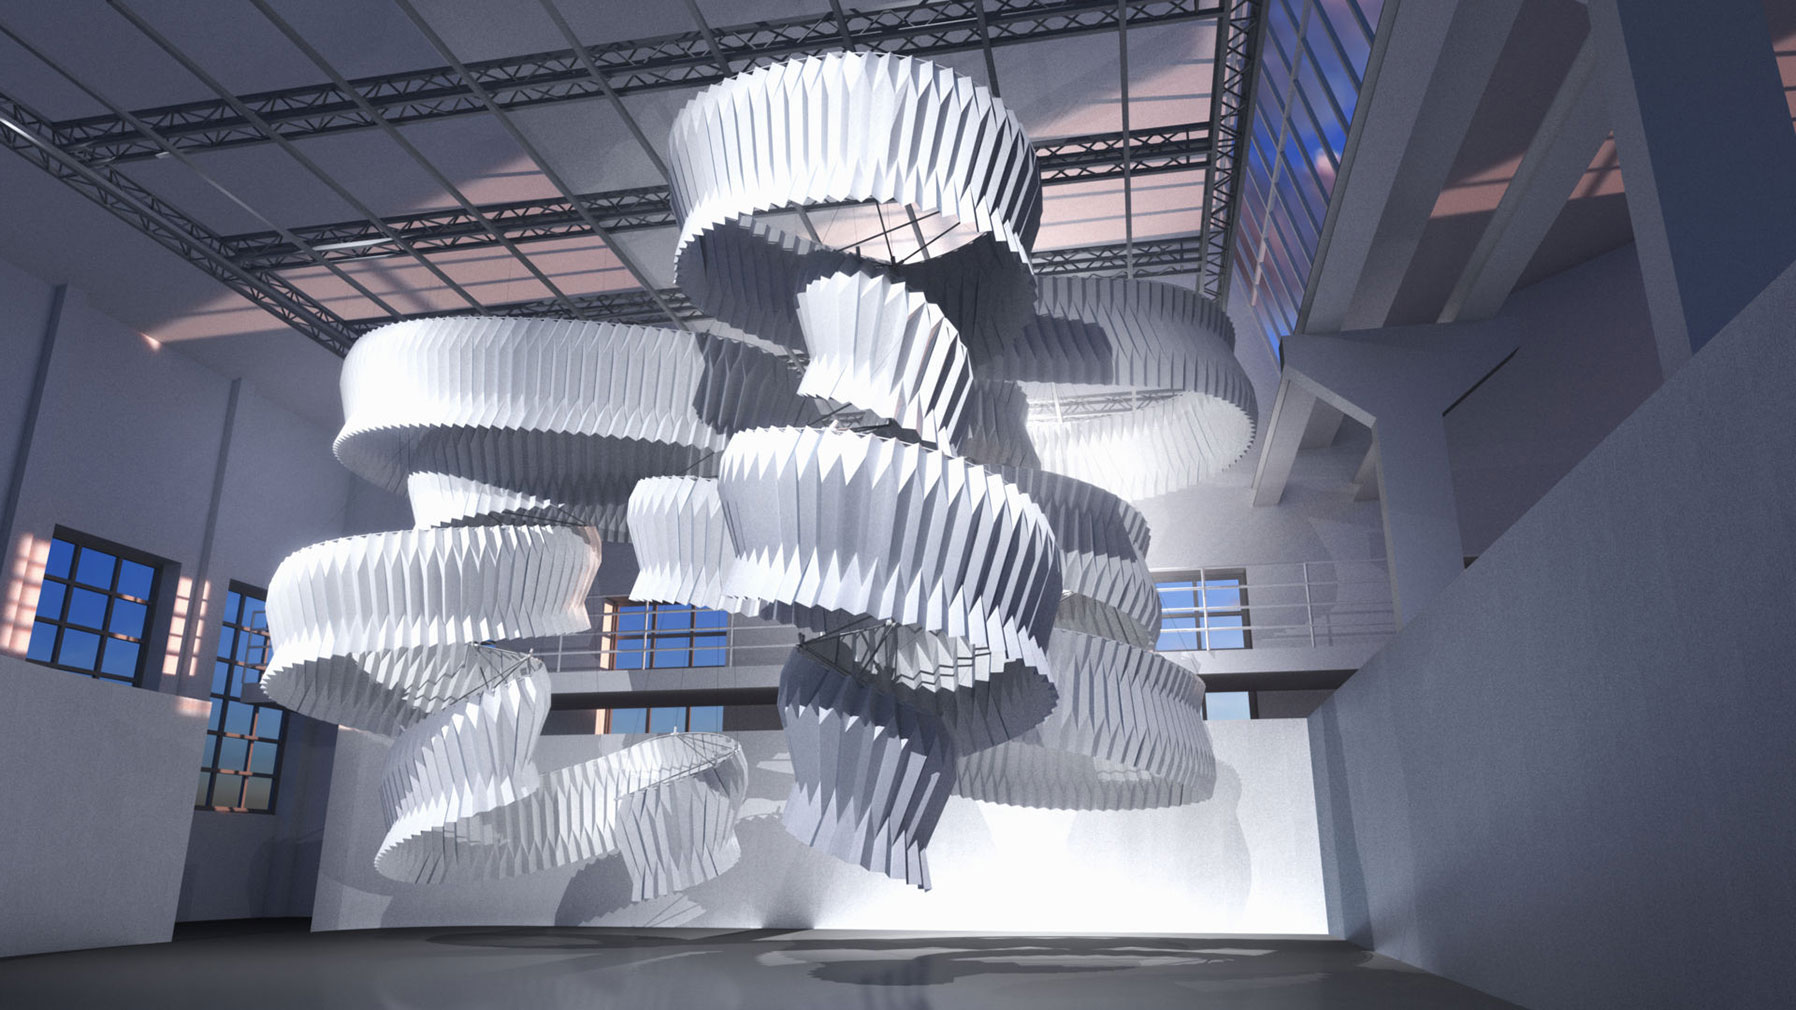 Kengo Kuma and Dassault Systemes' 'Breath/ng' installation at Milan Design Week